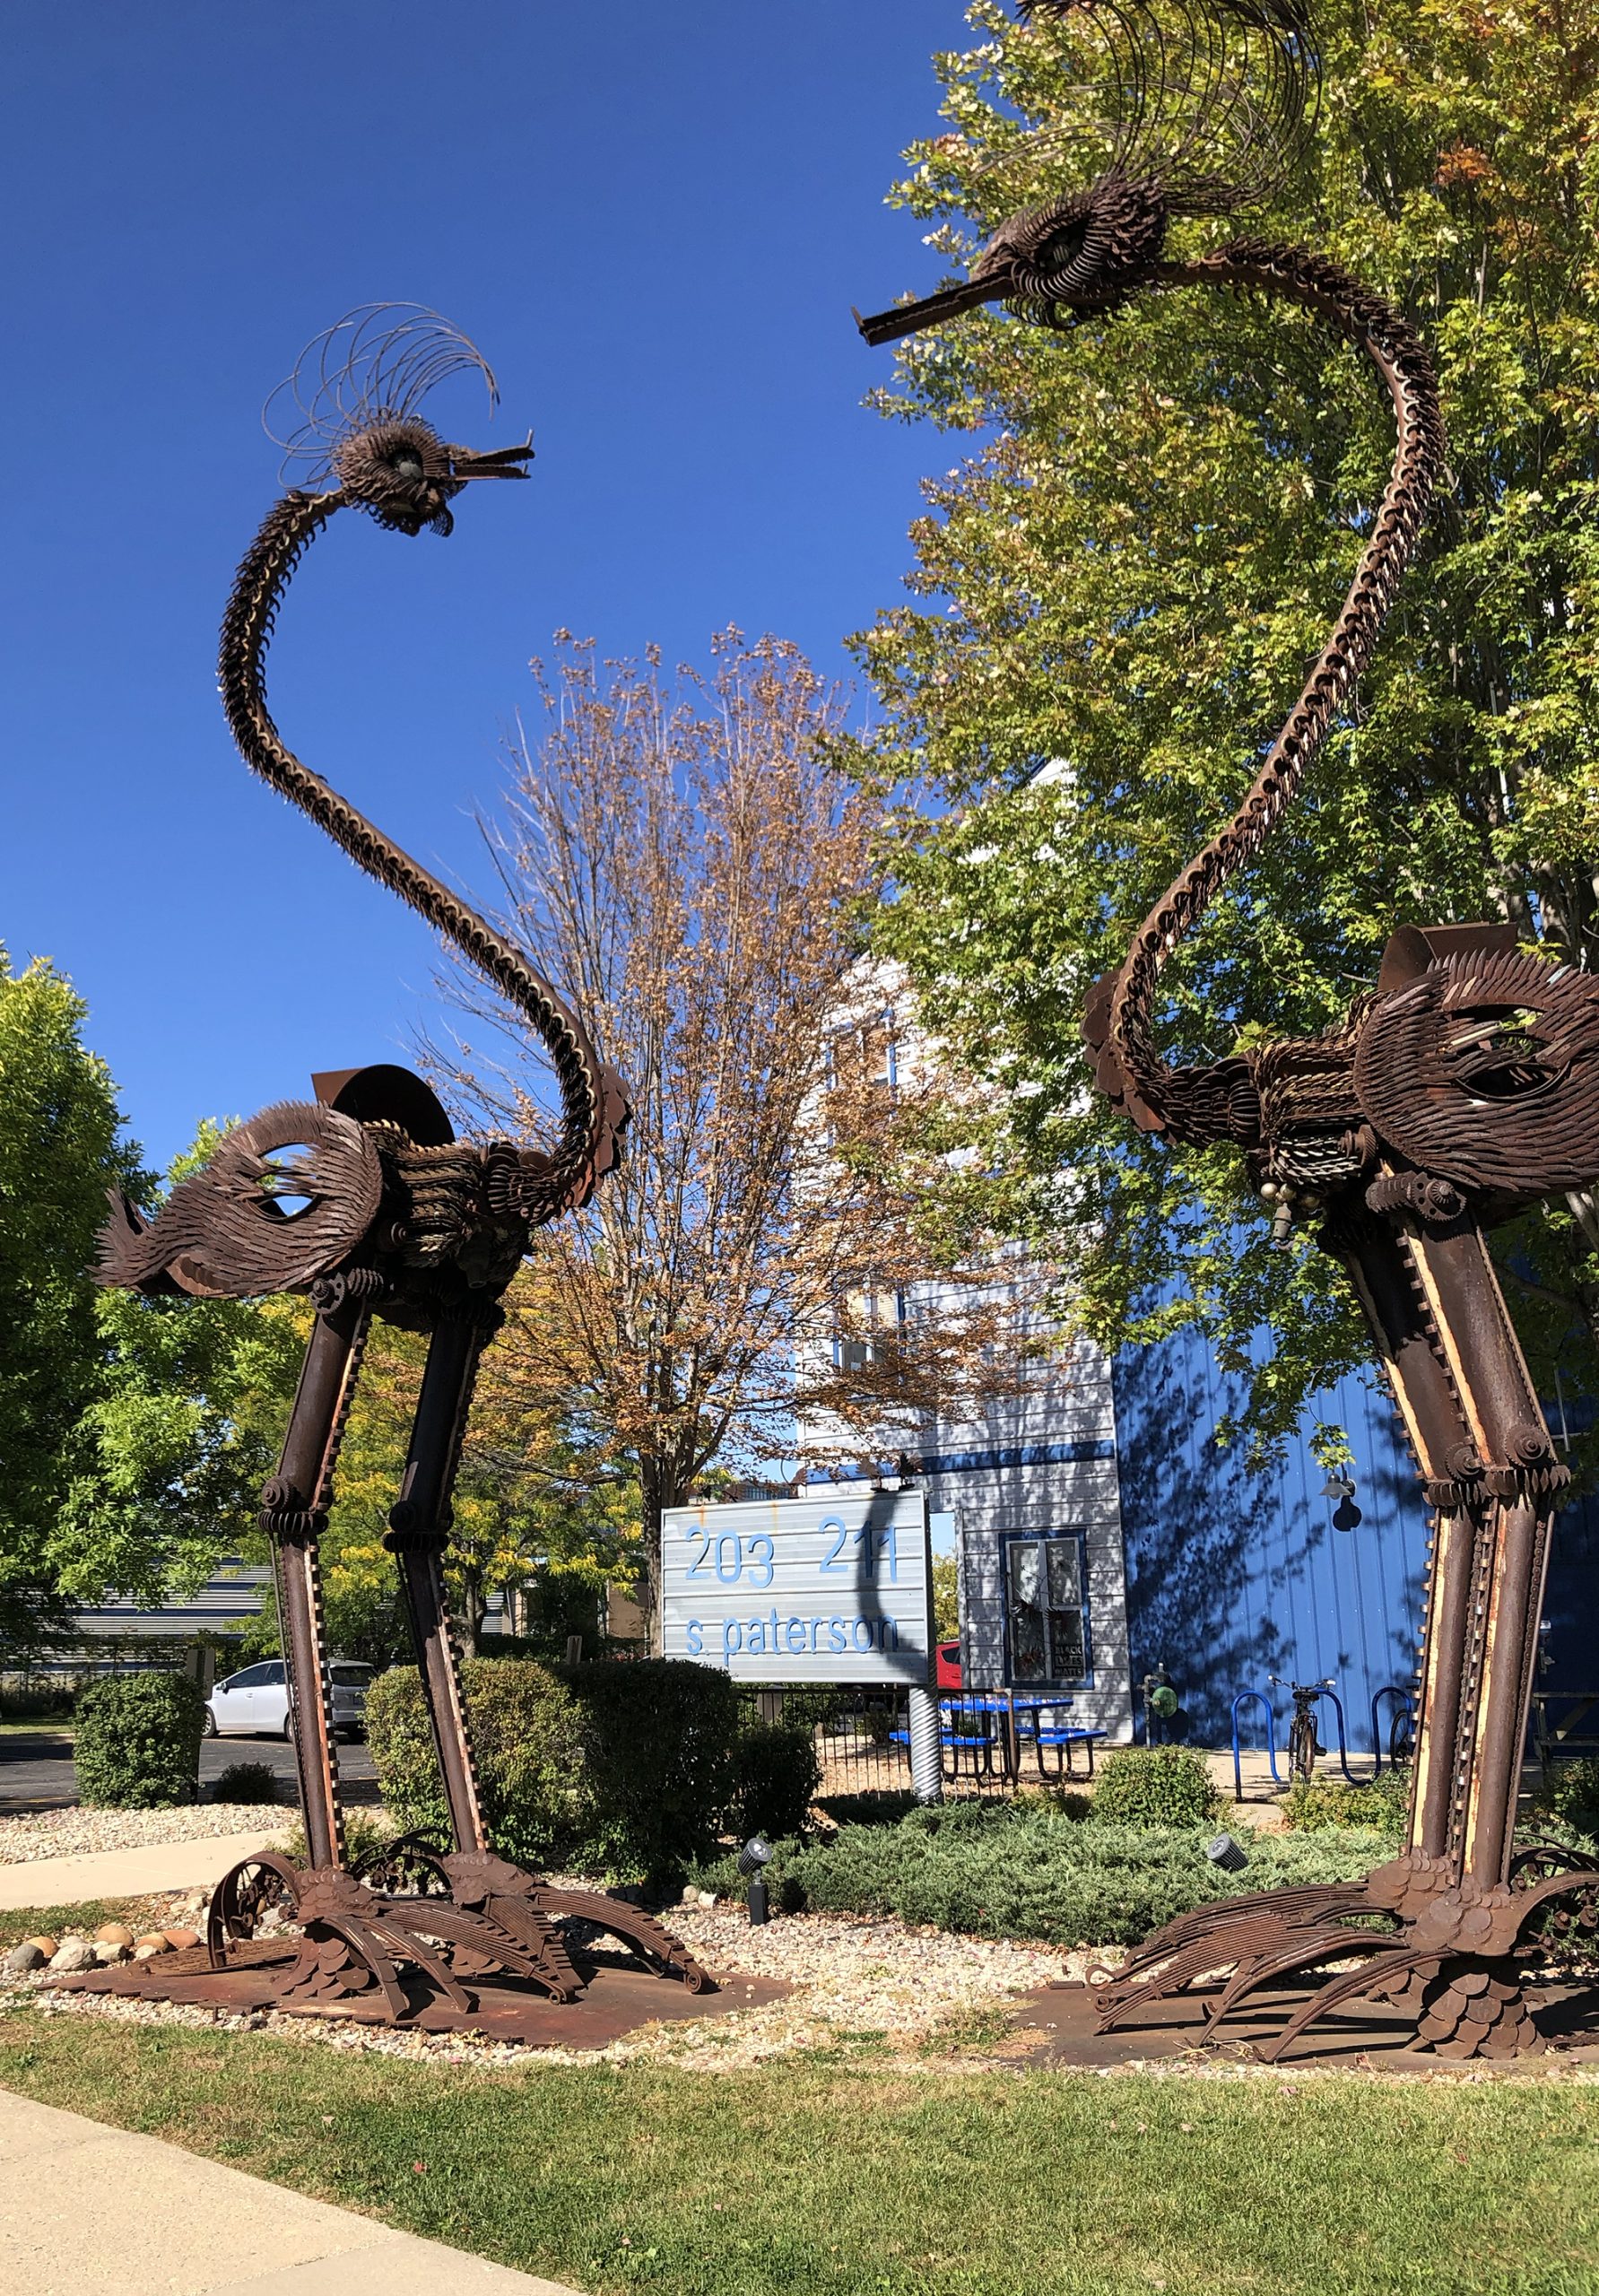 211 S. Patterson bird sculpture